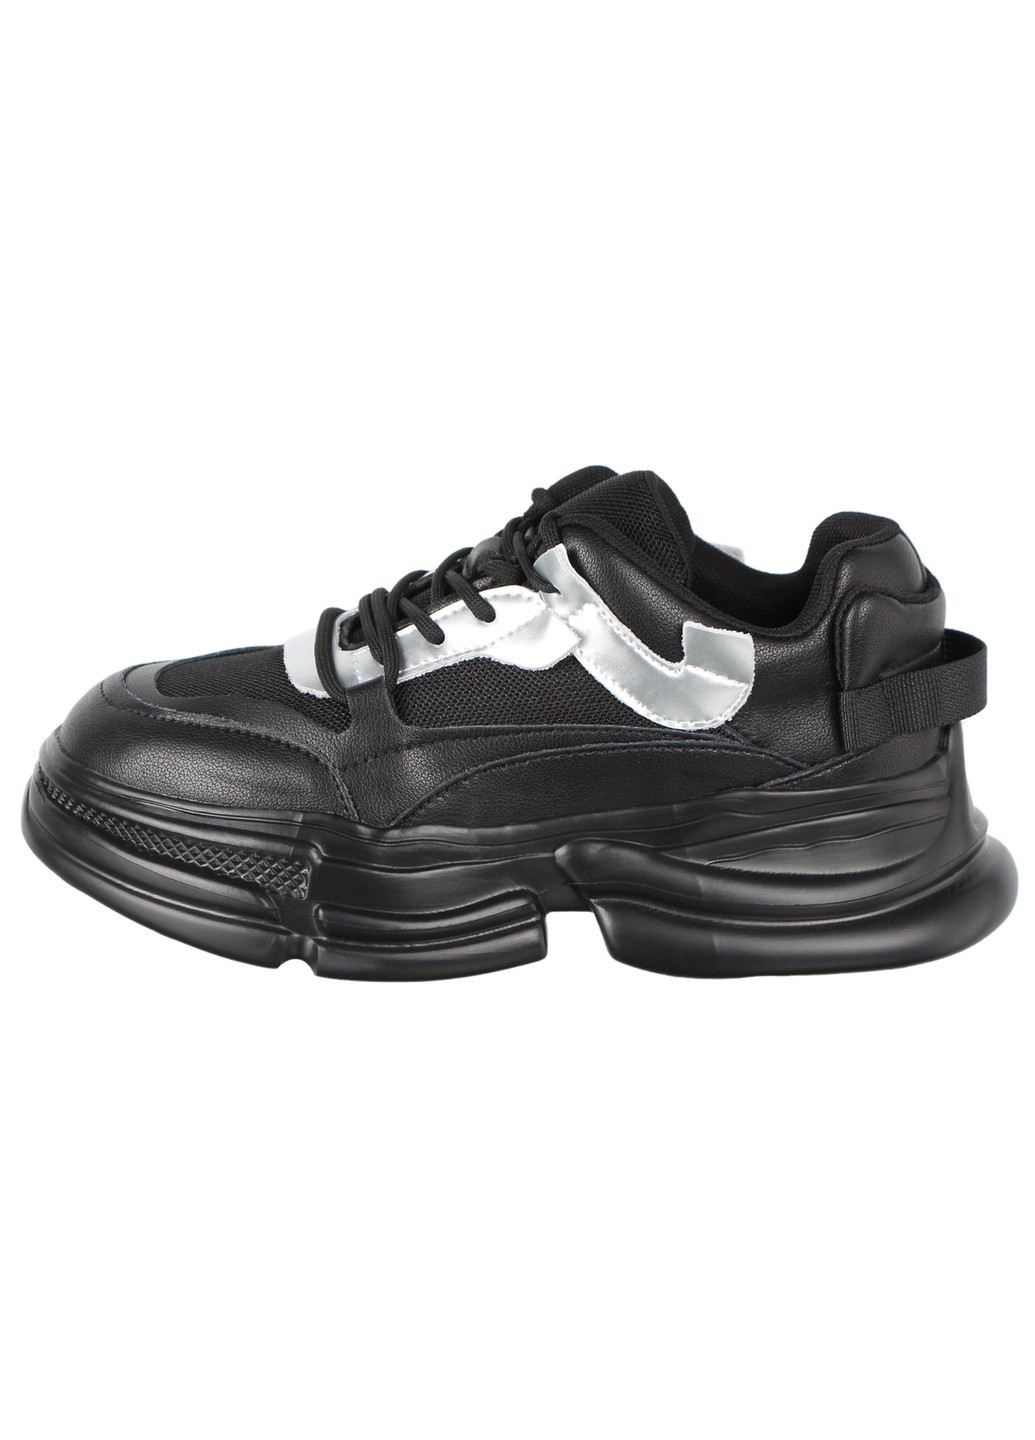 Черные демисезонные женские кроссовки 197053 Lifexpert